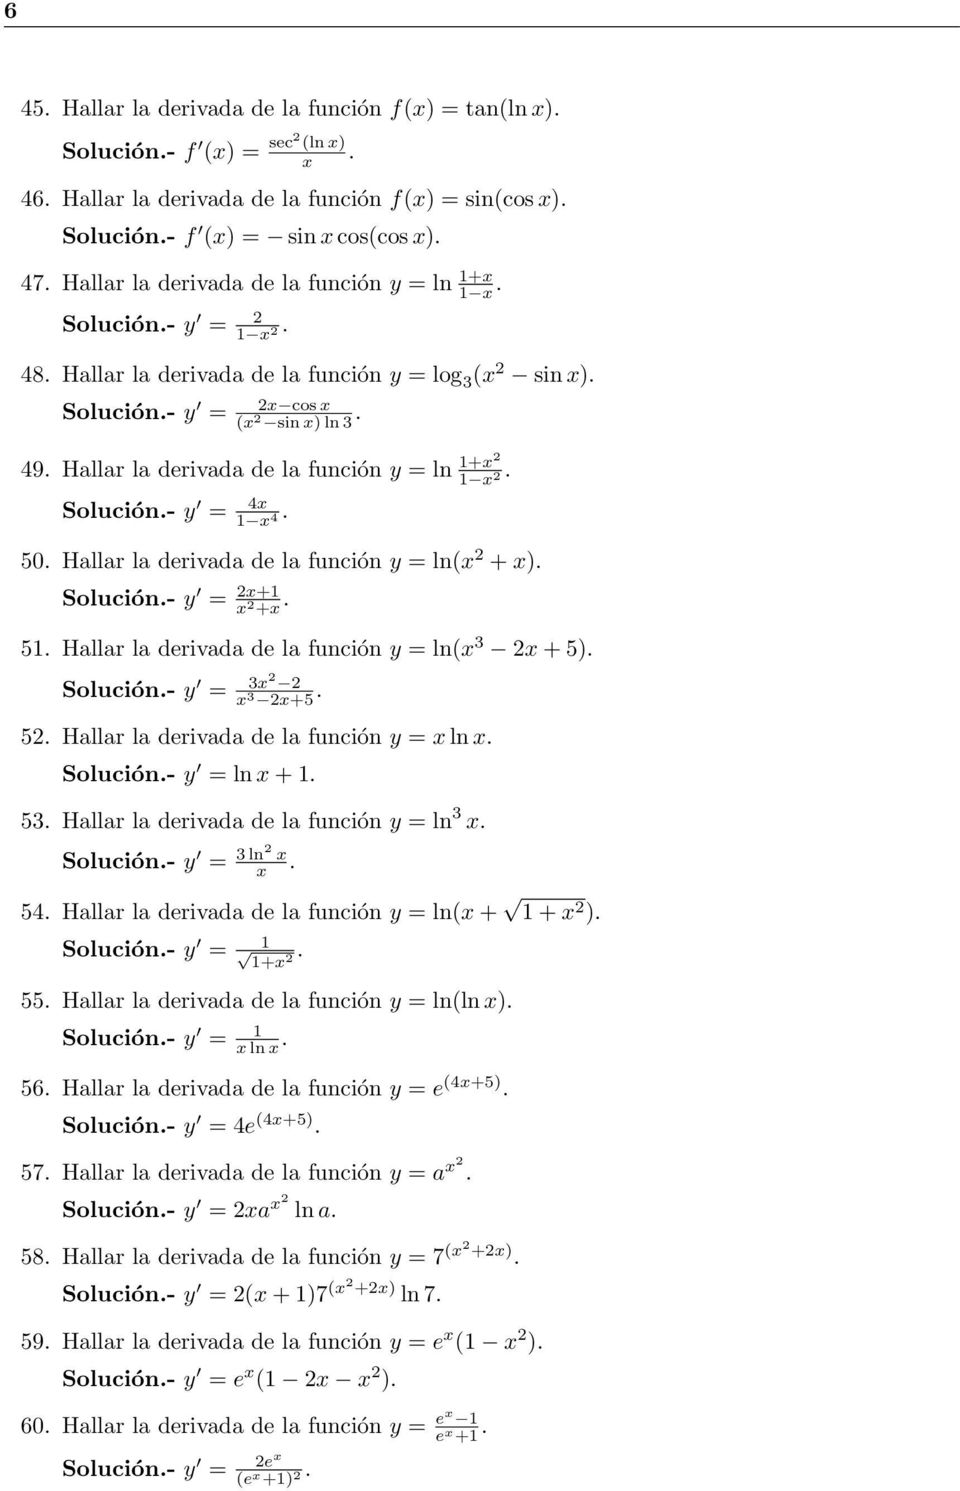 ) Solución- y = + + 5 Hallar la erivaa e la función y = ln( 3 + 5) Solución- y = 3 3 +5 5 Hallar la erivaa e la función y = ln Solución- y = ln + 53 Hallar la erivaa e la función y = ln 3 Solución- y